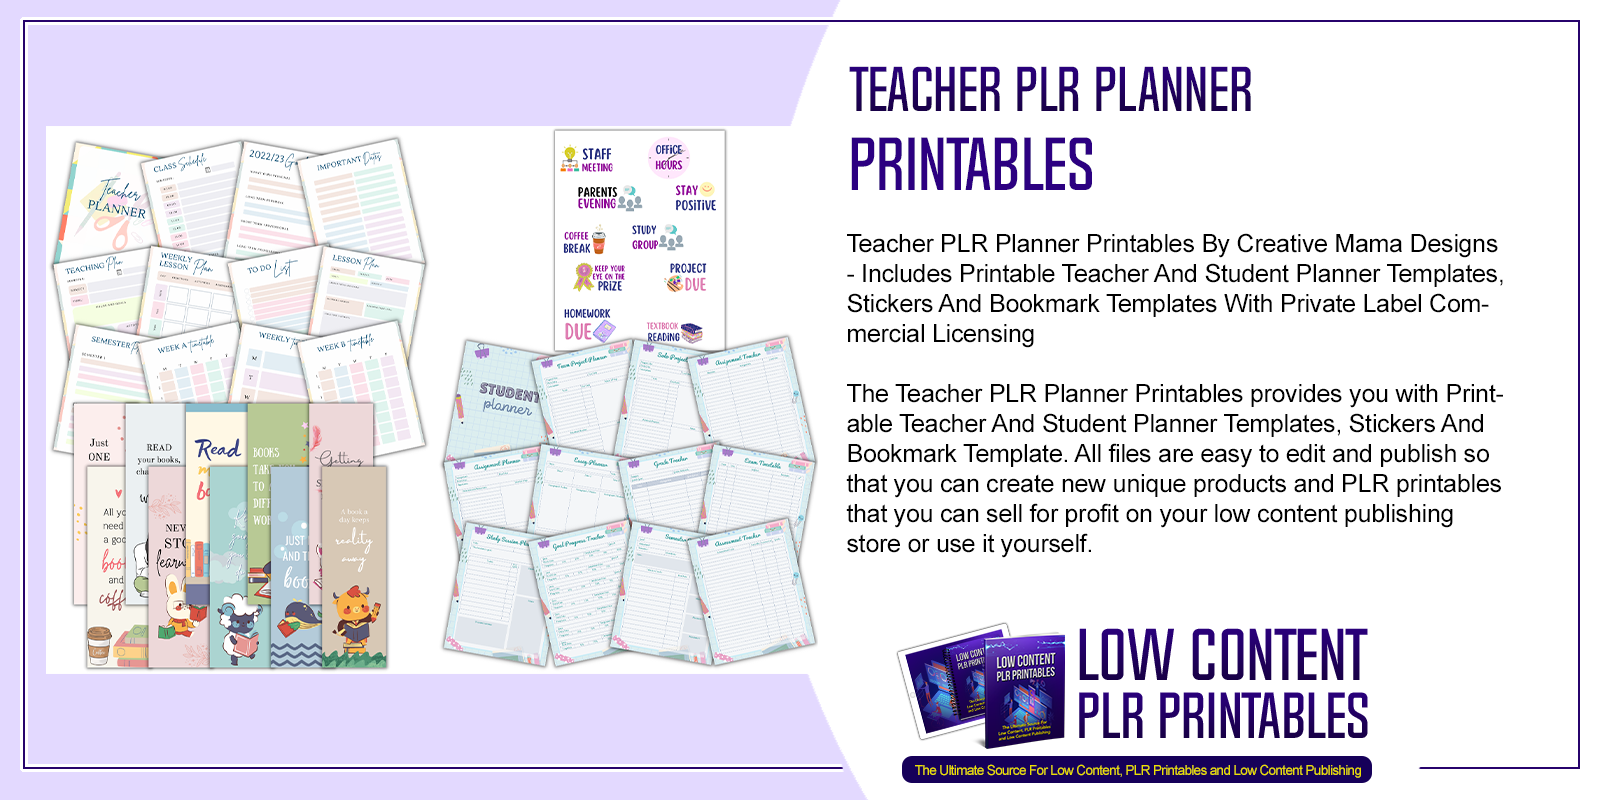 Teacher PLR Planner Printables